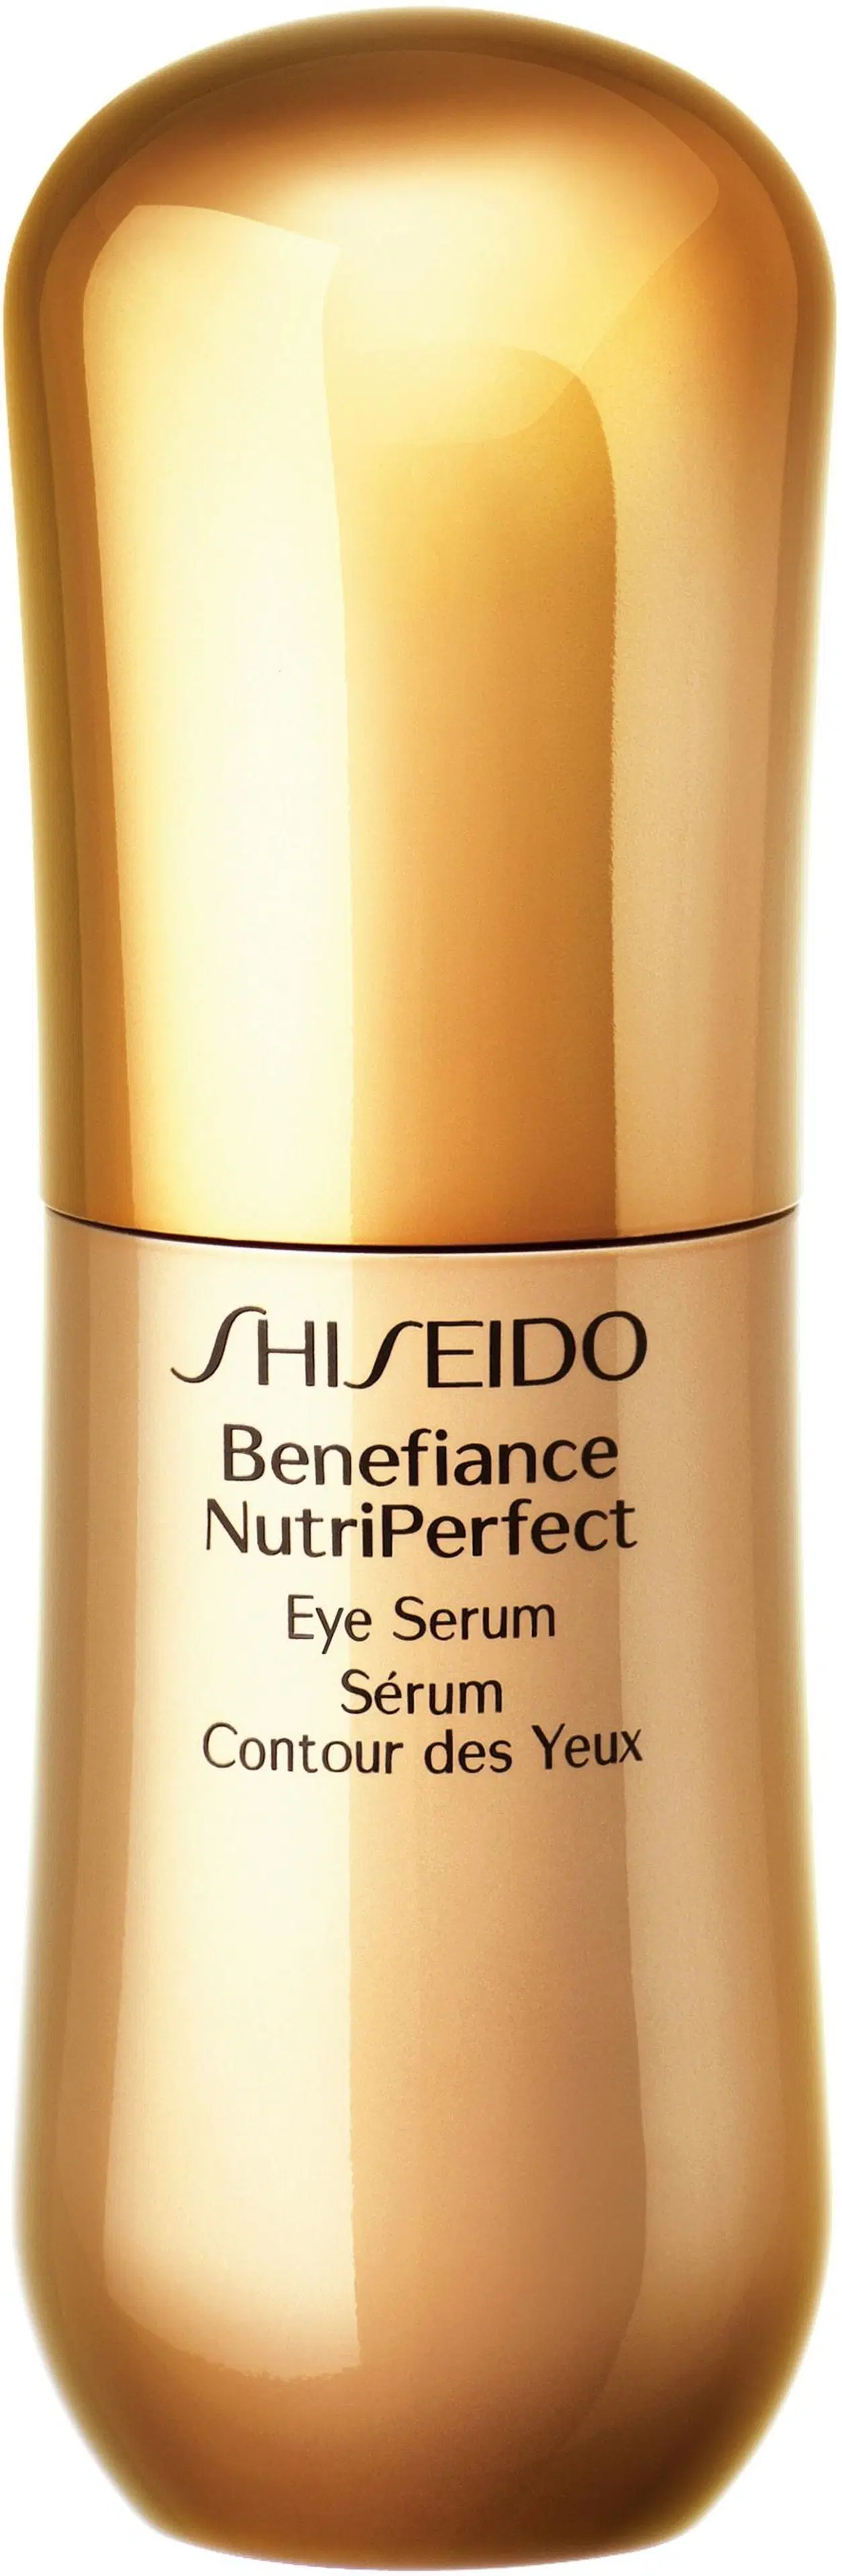 Shiseido Benefiance Nutriperfect Eye Seerumi silmänympärysiholle 15 ml